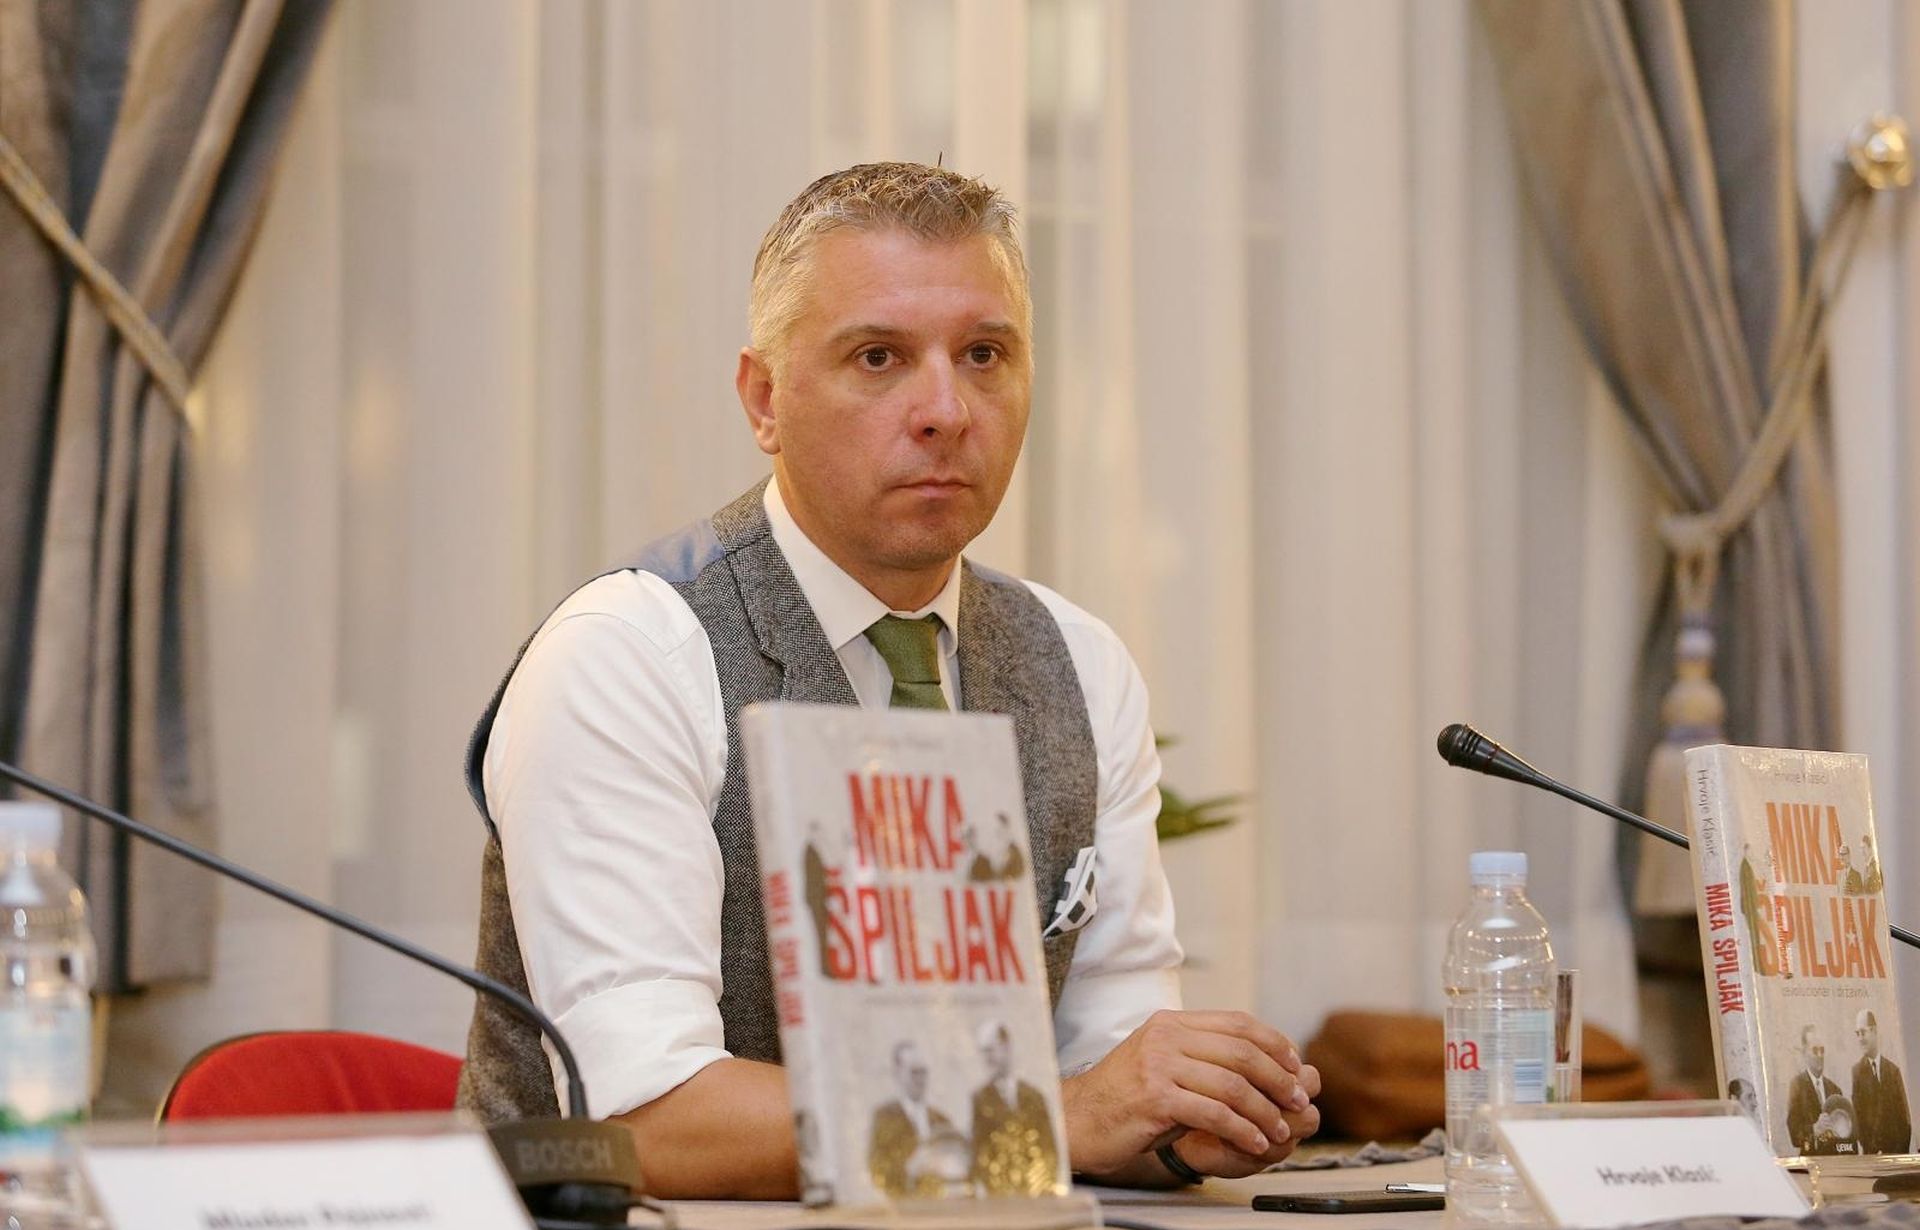 30.10.2019., HND, Zagreb - Promocija knjige Hrvoja Klasica "Mika Spiljak - Revolucionar i drzavnik". 
Photo: Dalibor Urukalovic/PIXSELL